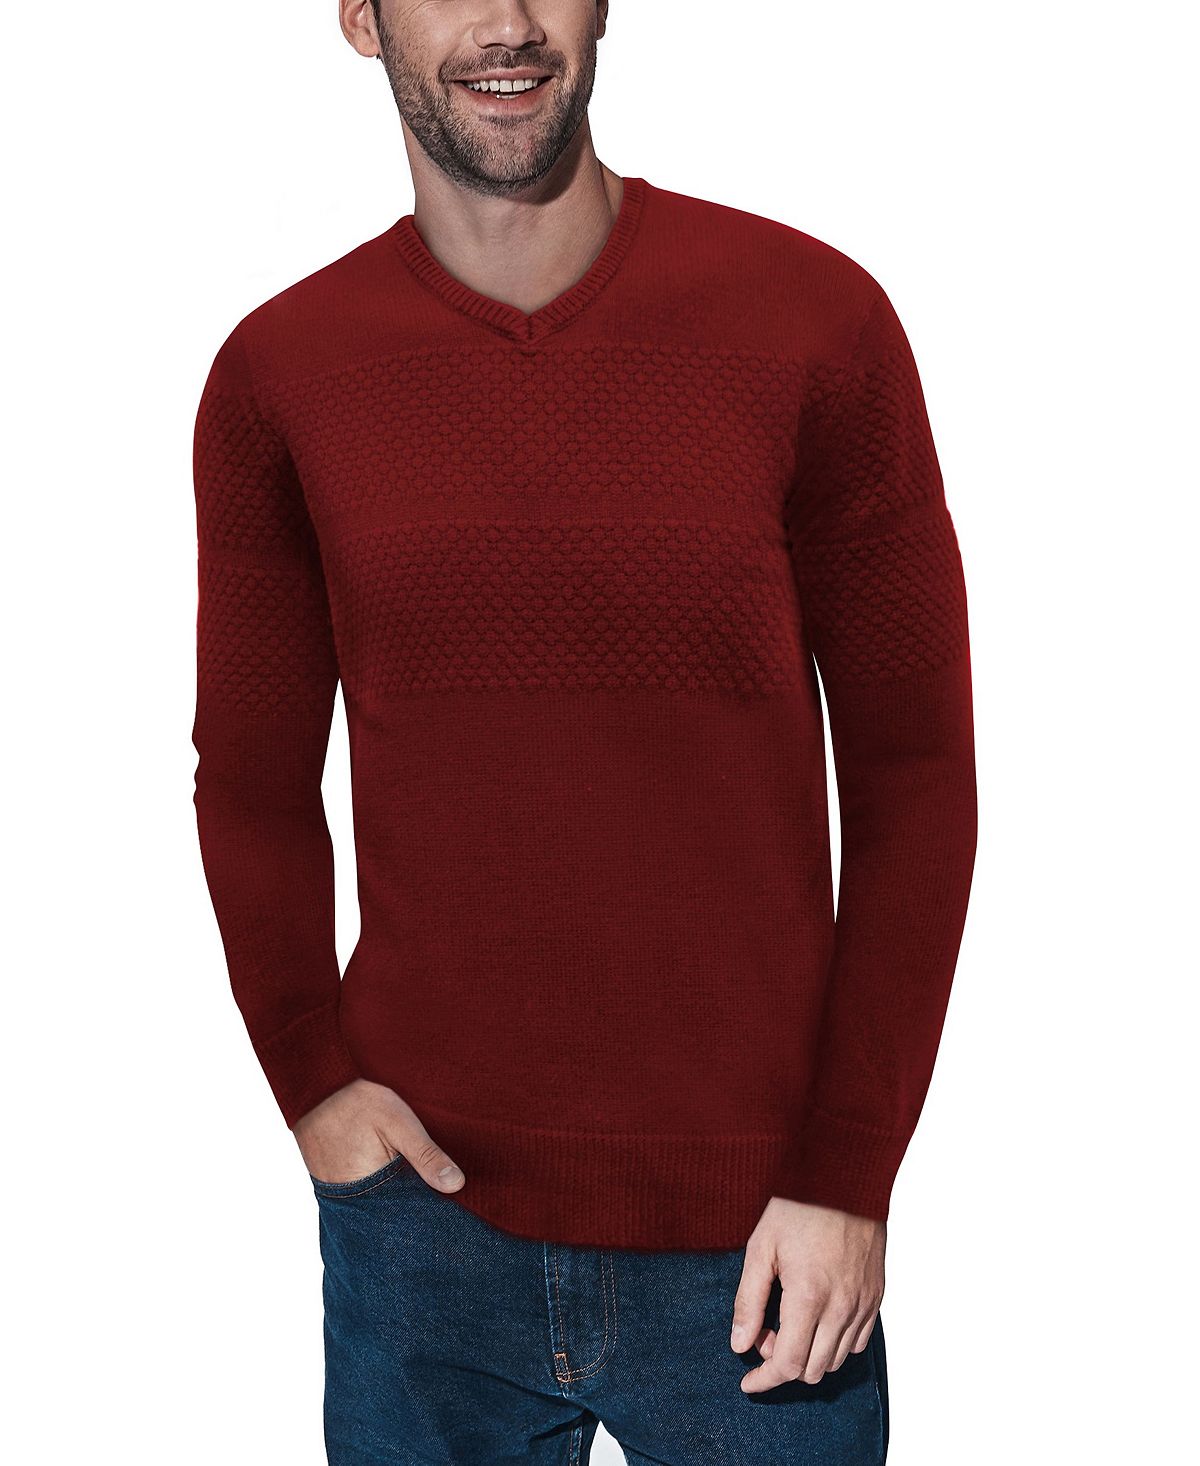 Мужской вязаный свитер с v-образным вырезом и сотами X-Ray женский пуловер с вышивкой и v образным вырезом